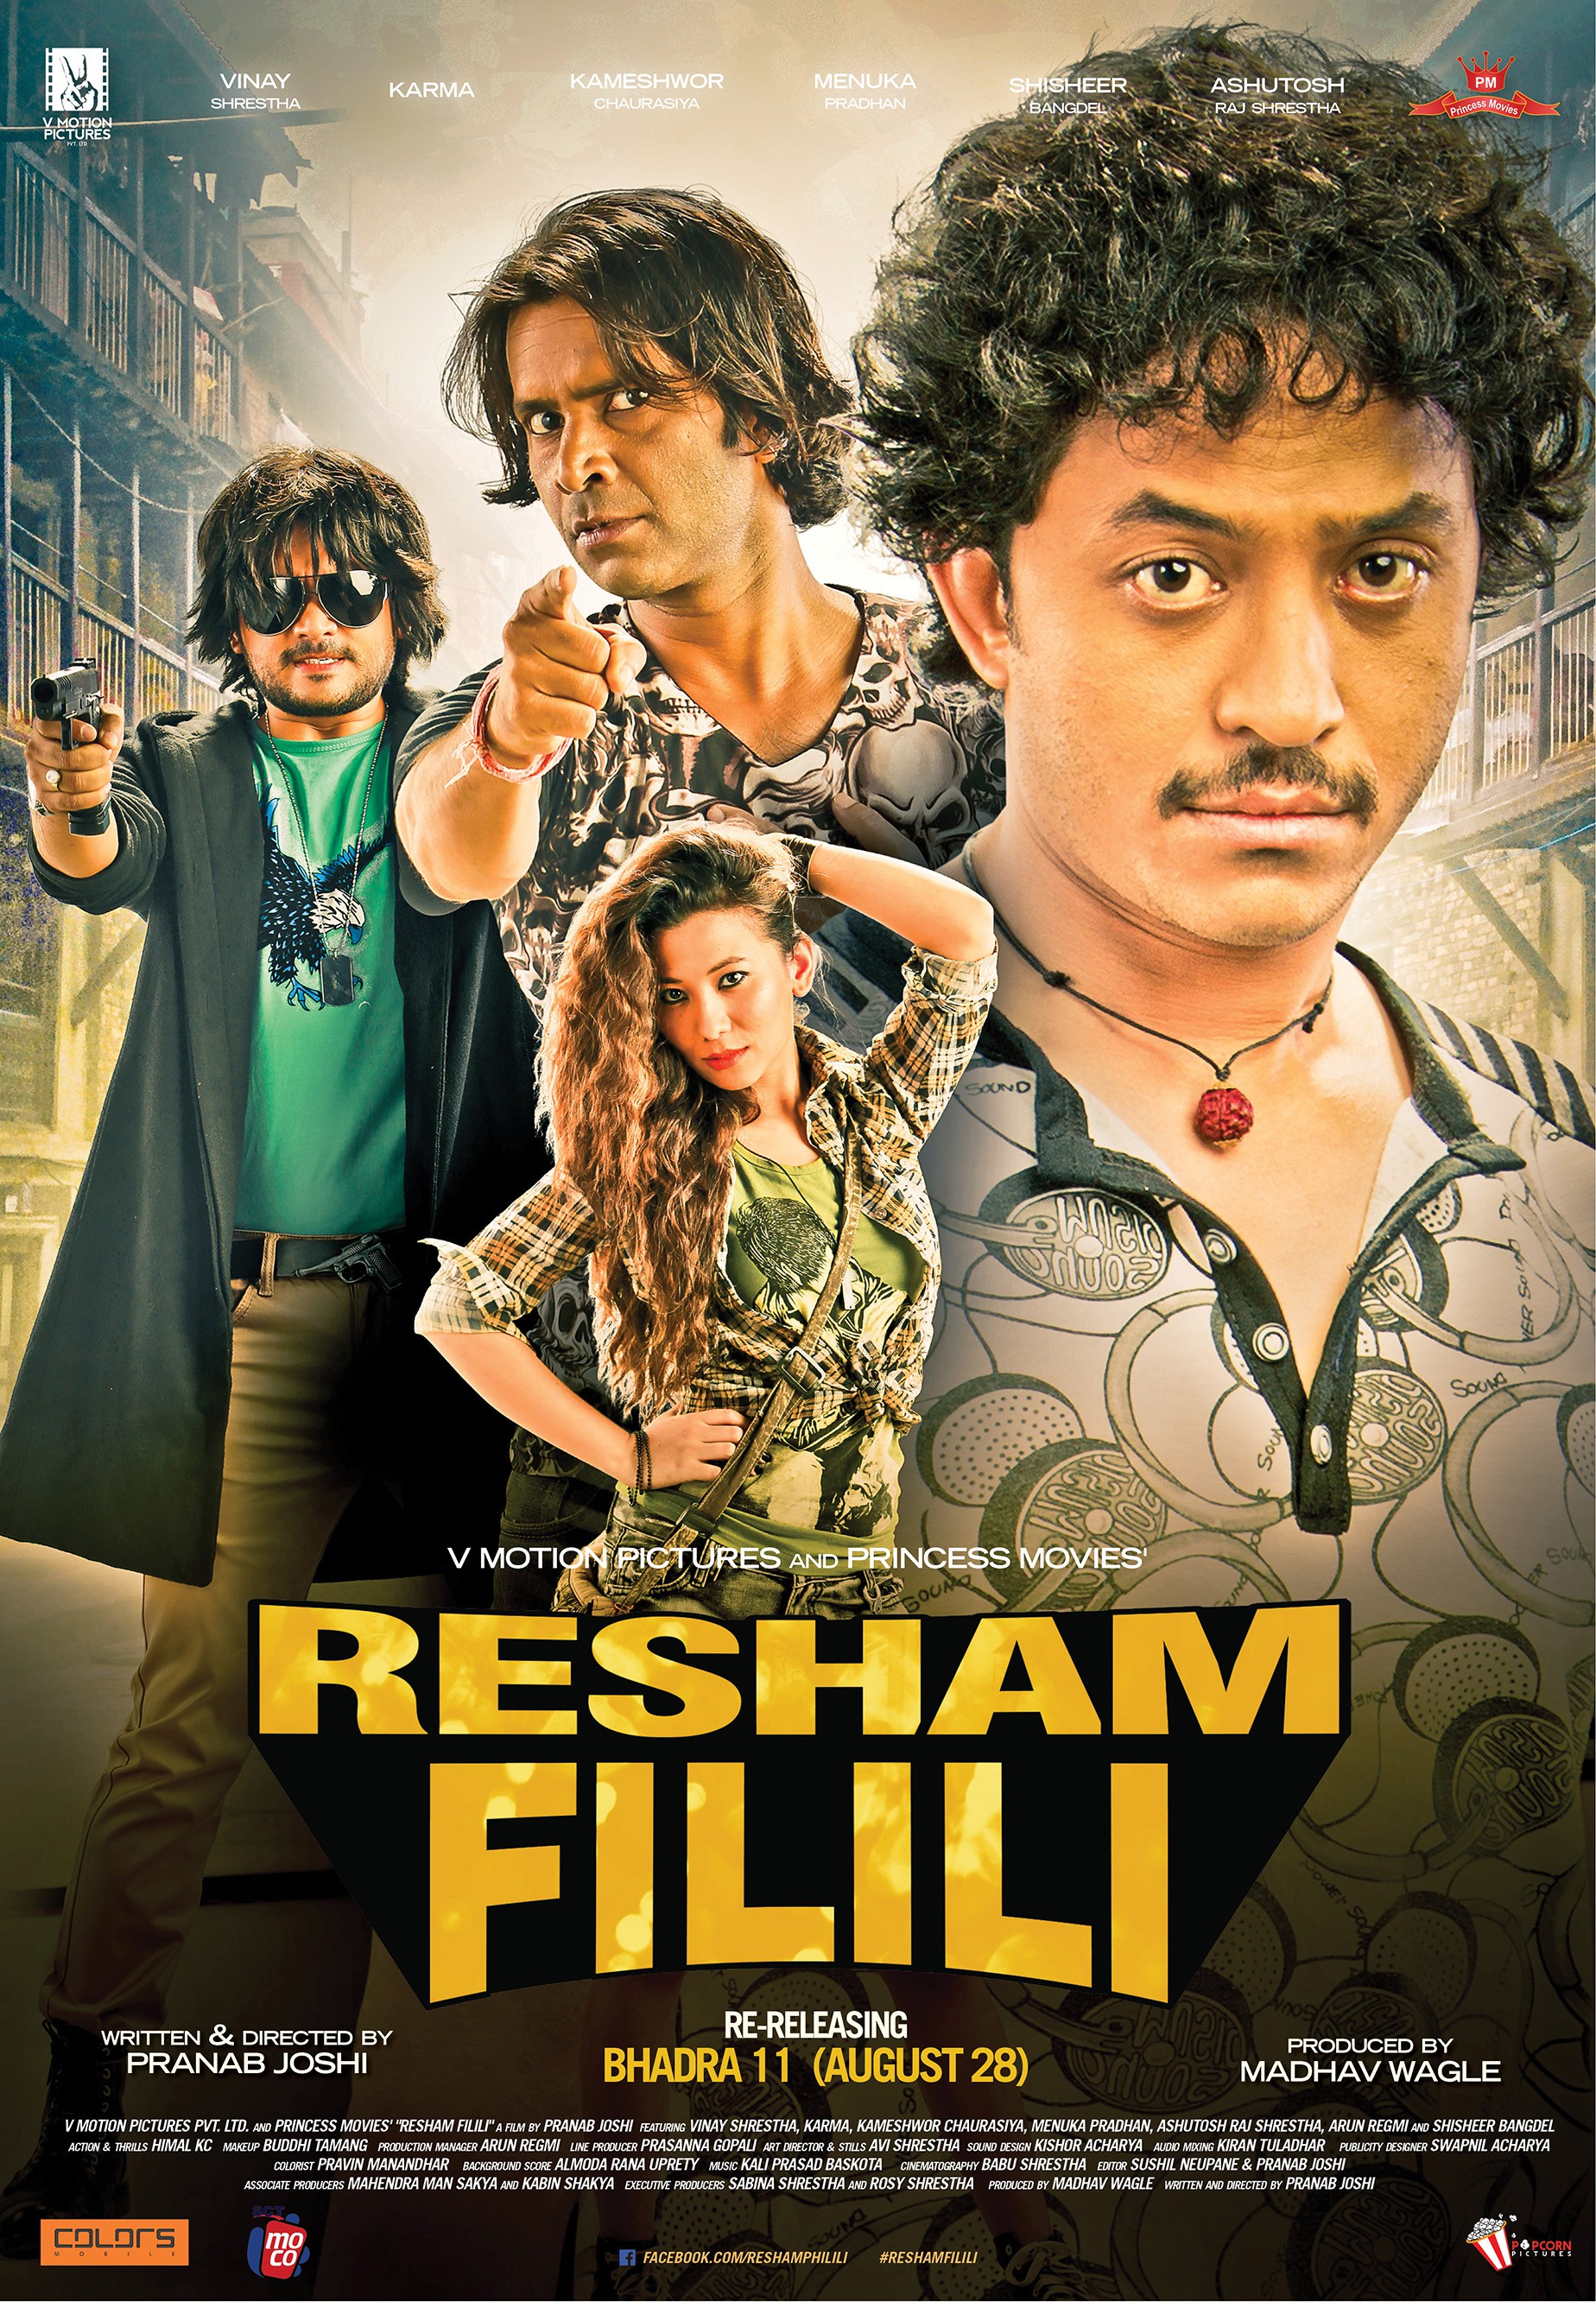 Mega Sized Movie Poster Image for Resham Filili (#10 of 11)